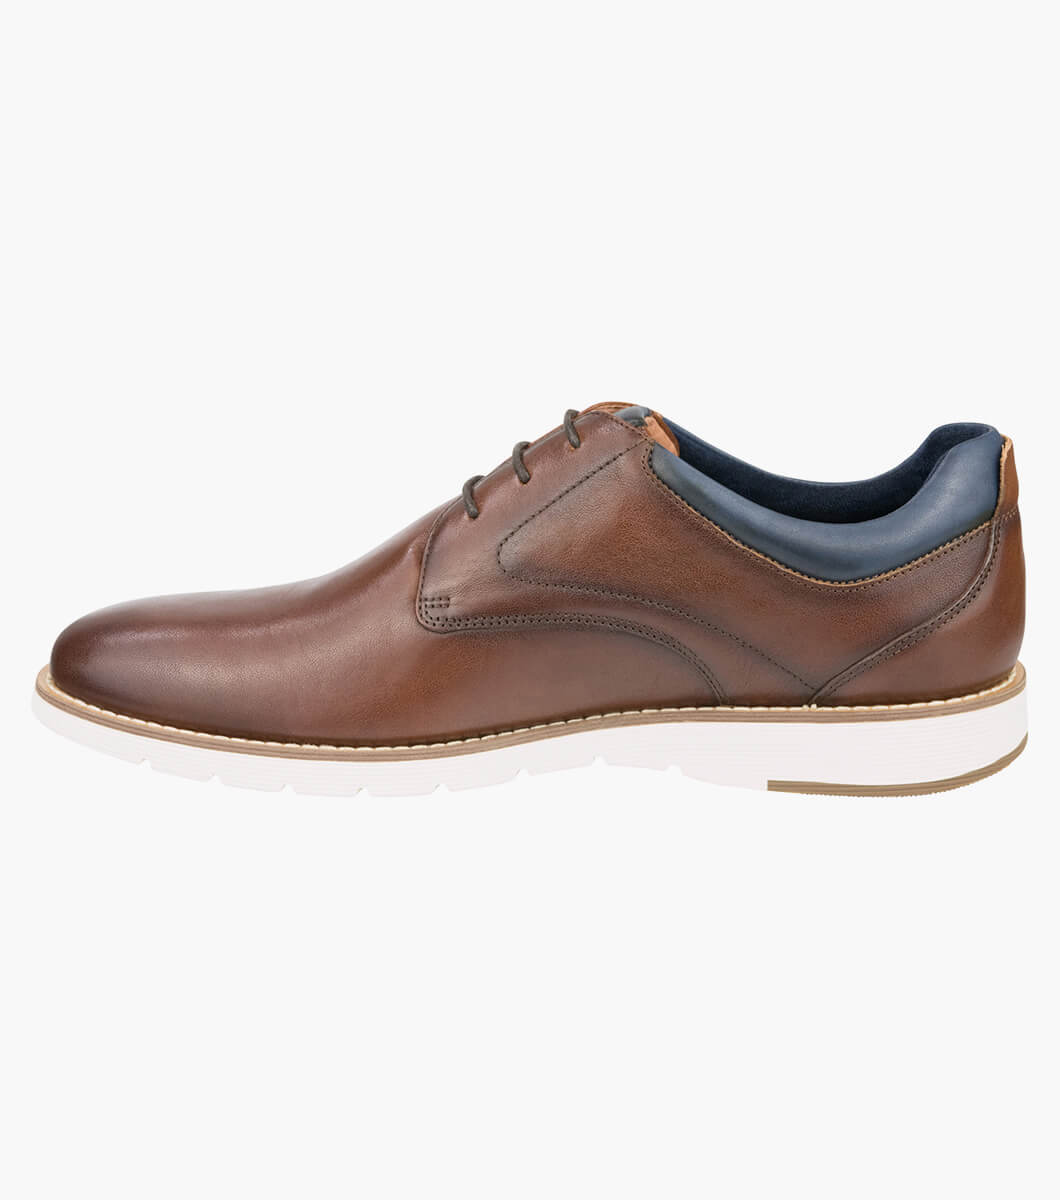 Replay Plain Toe Derby Men’s Casual Shoes | Florsheim.com